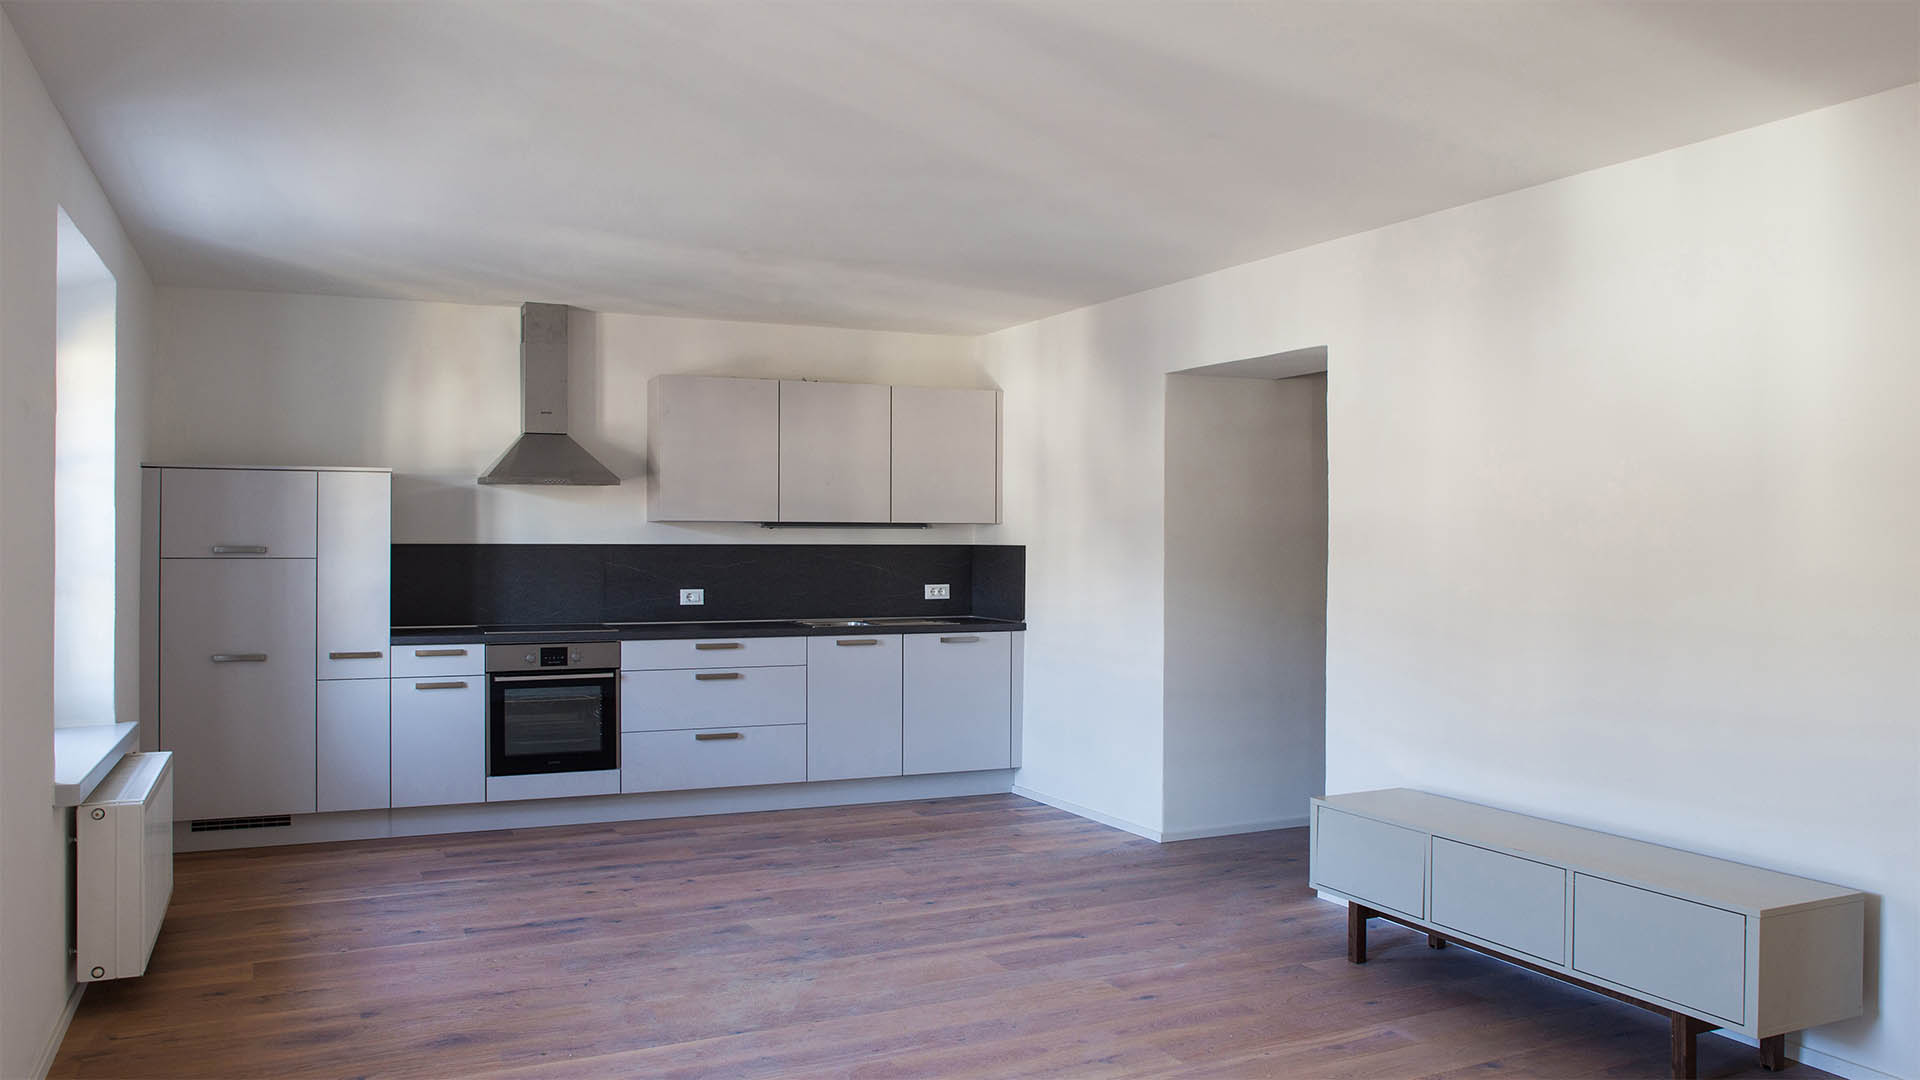 Professorenhause appartamenti ristrutturati in un edificio storico a Bressanone